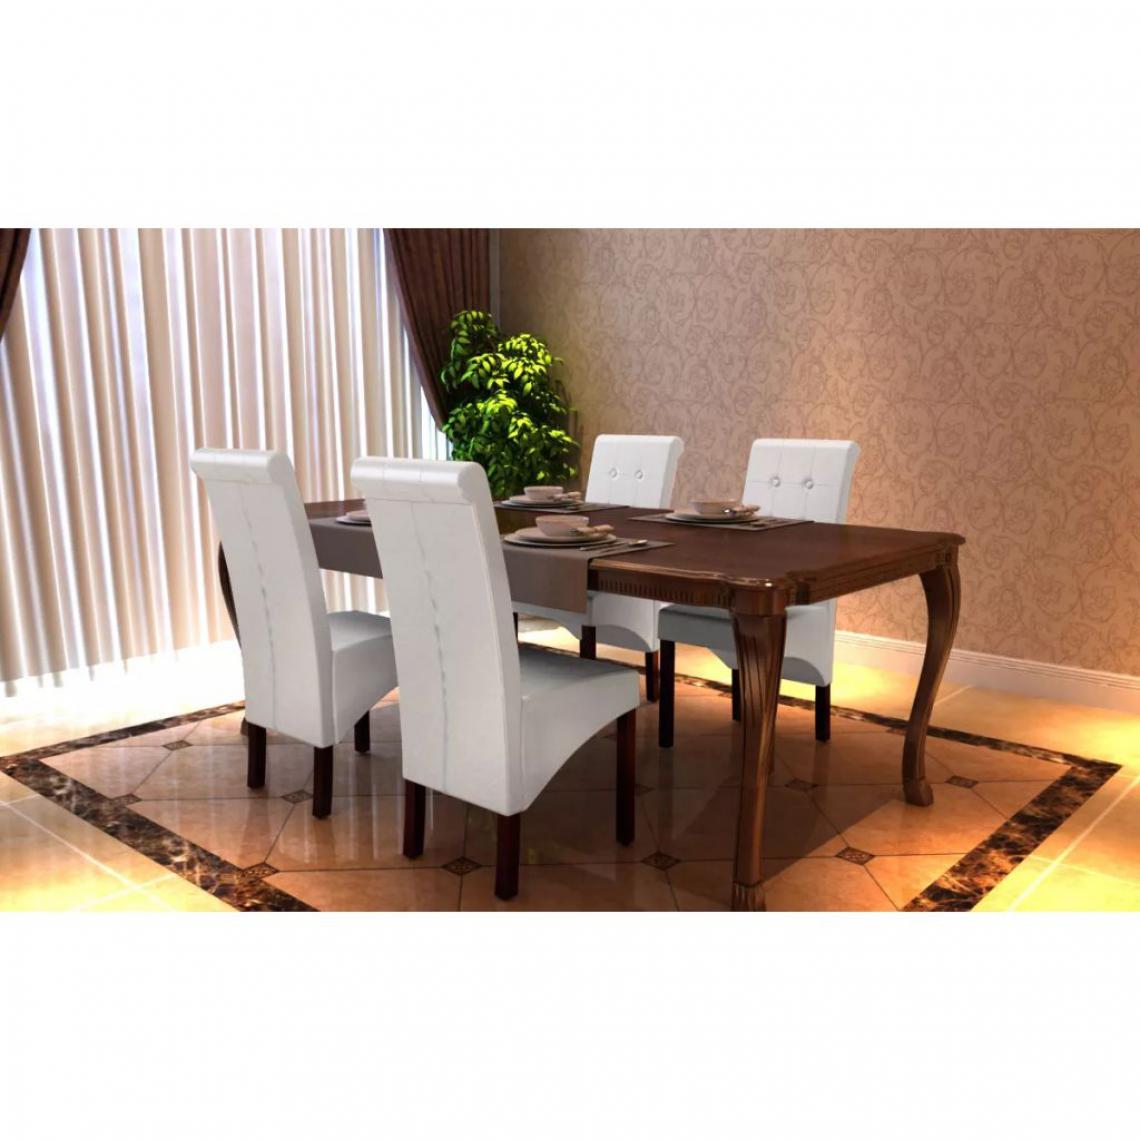 Chunhelife - Chaises de salle à manger 4 pcs Blanc Similicuir - Chaises